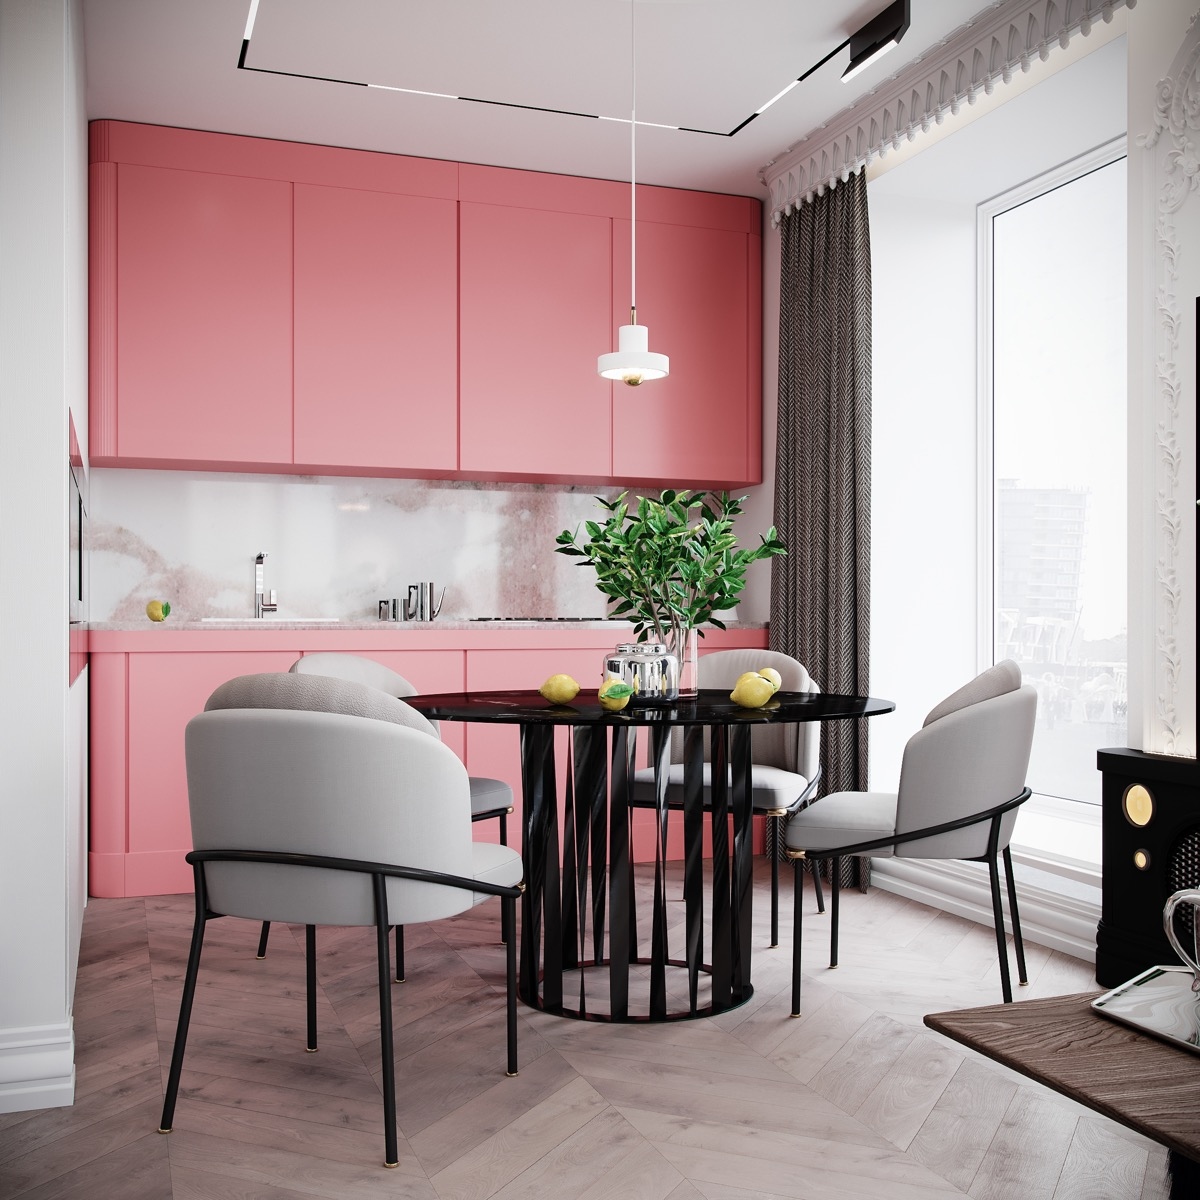 Tủ bếp màu hồng tươi sáng sẽ là điểm nhấn vô cùng đặc biệt, góp phần nên một bức tranh đầy màu sắc trong phòng bếp.